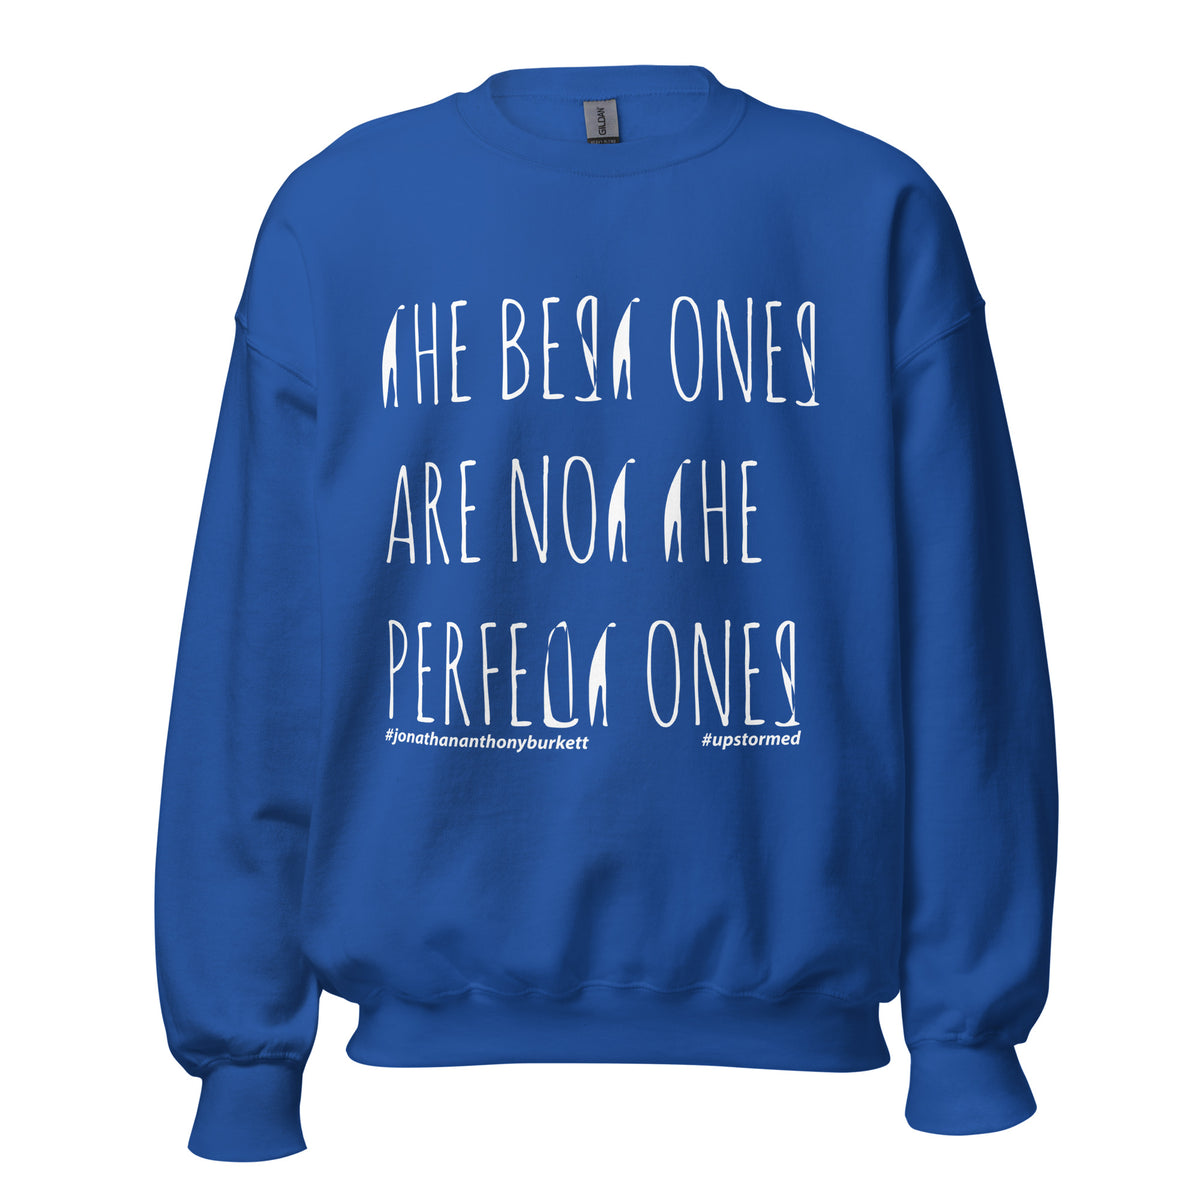 The Best Ones Upstormed Sweatshirt